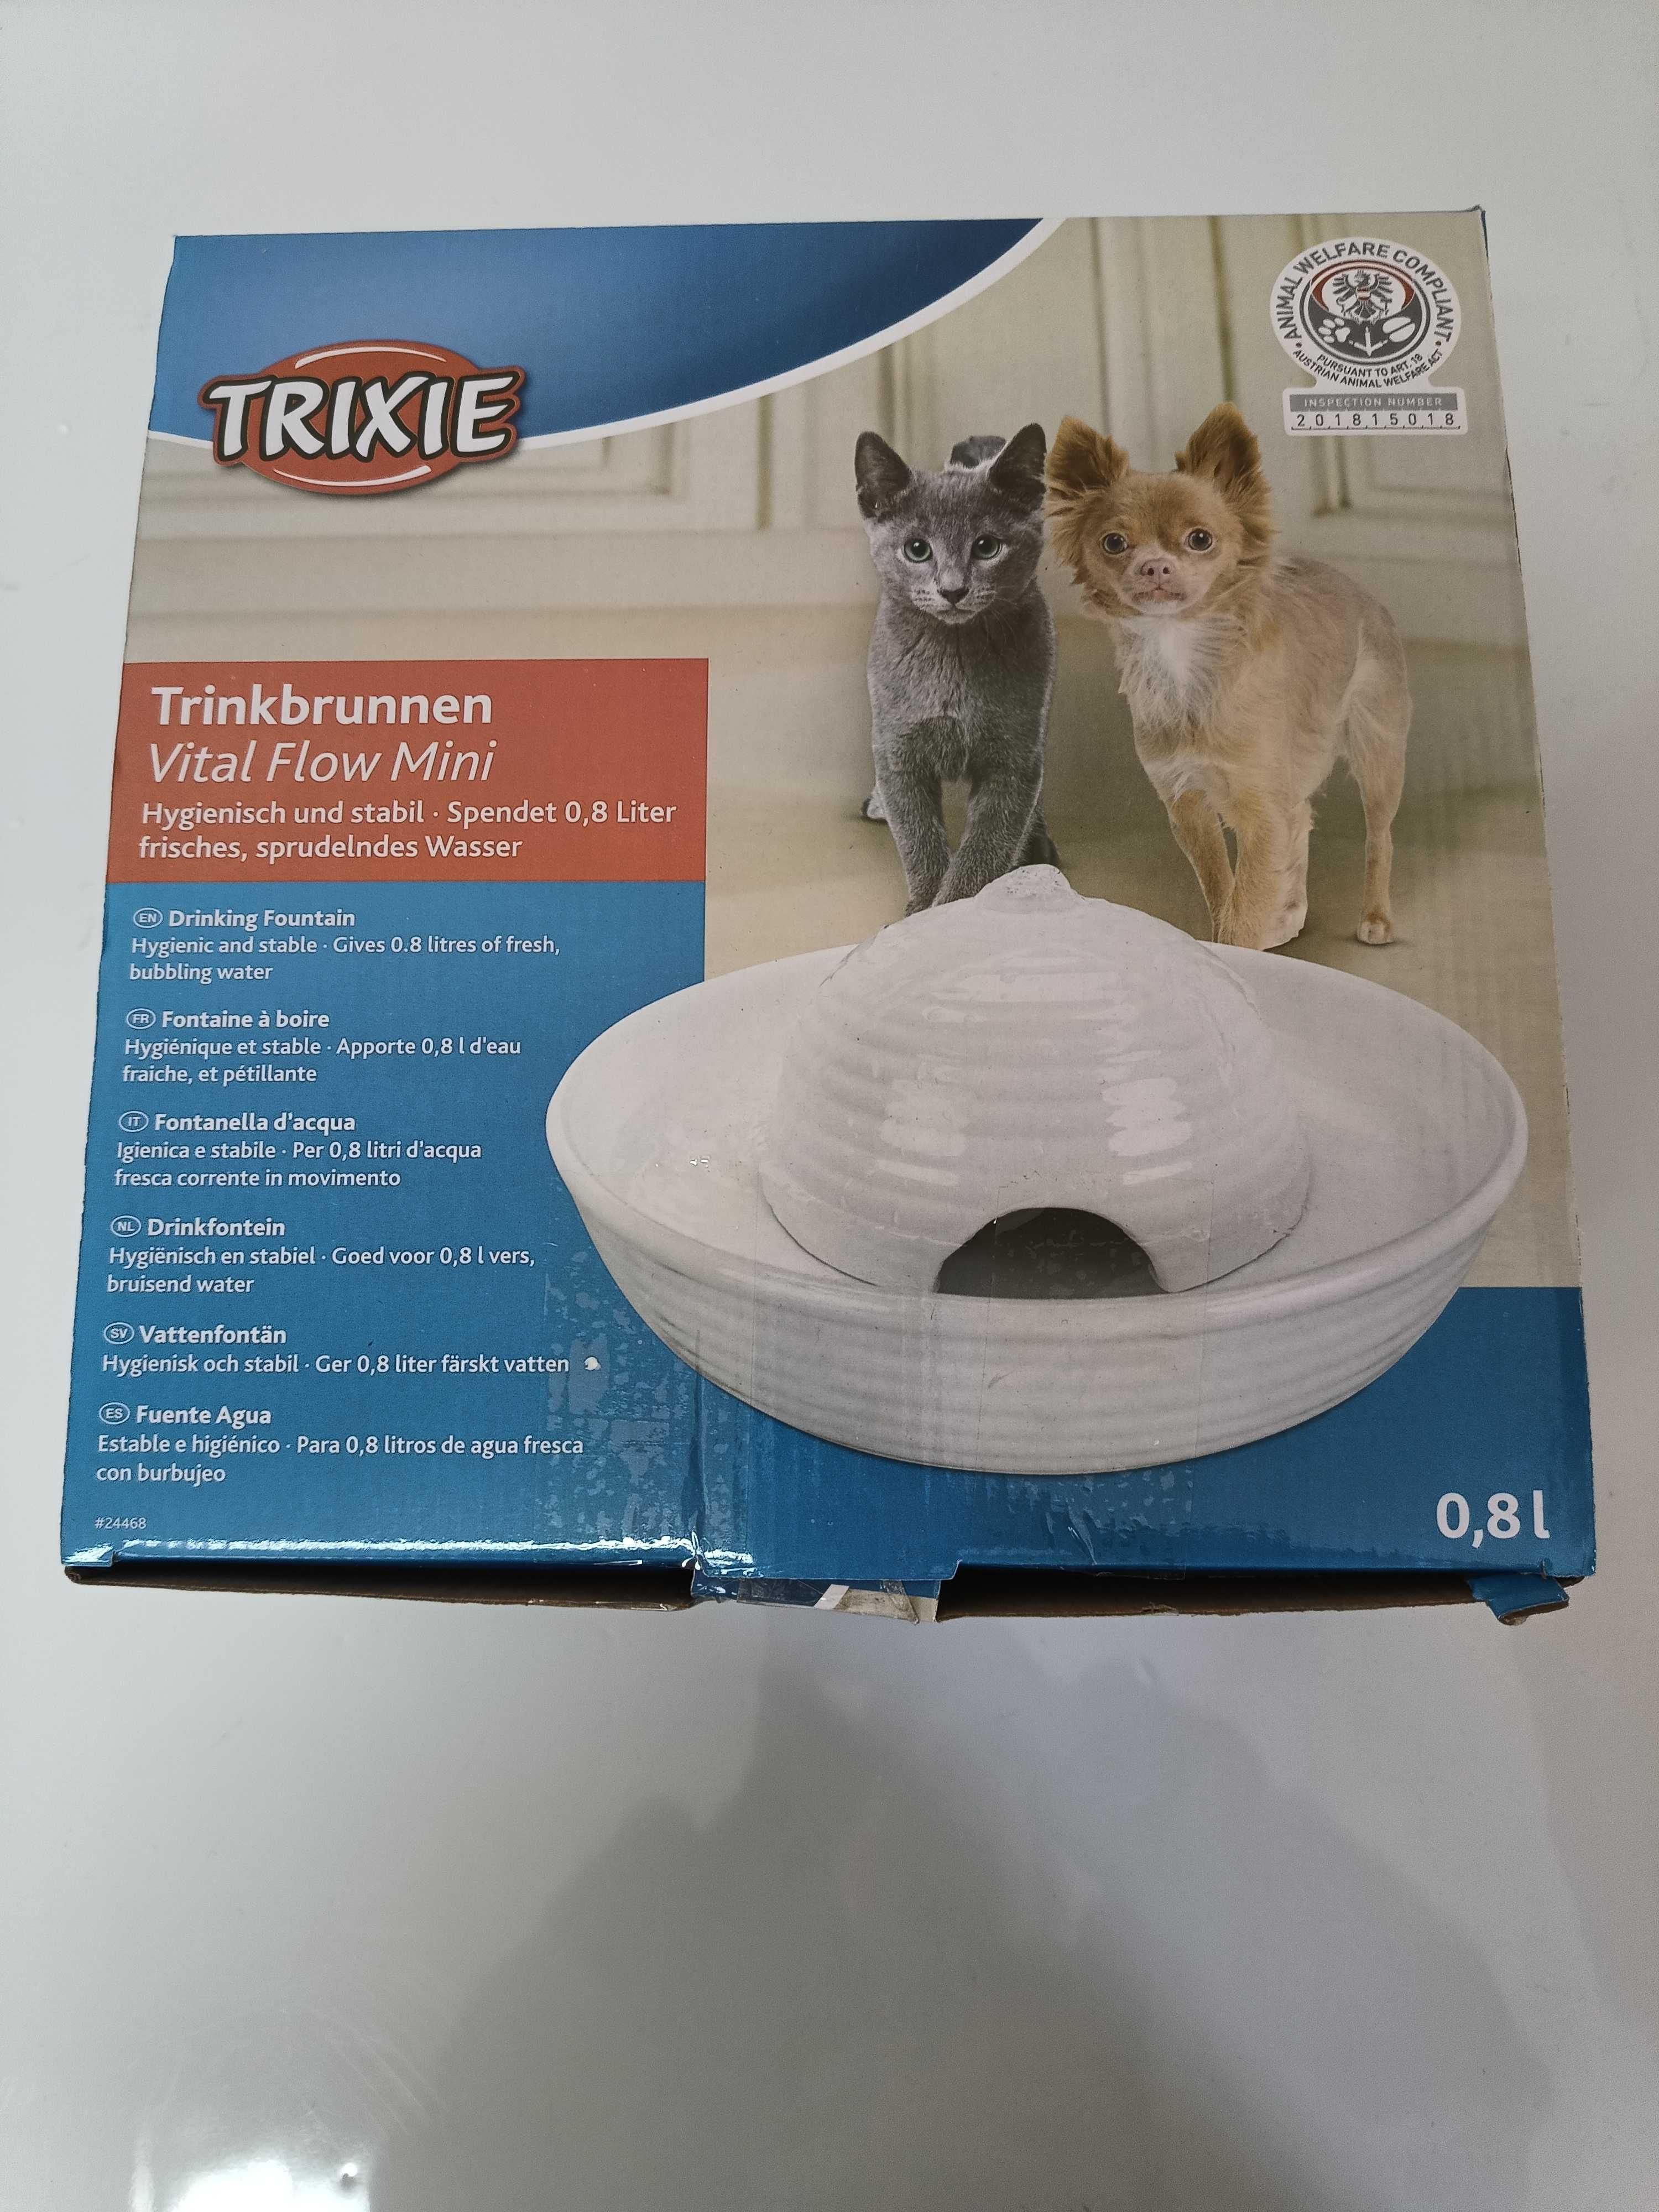 Trixie Vital Flow ceramiczne poidełko-fontanna

0,8 l